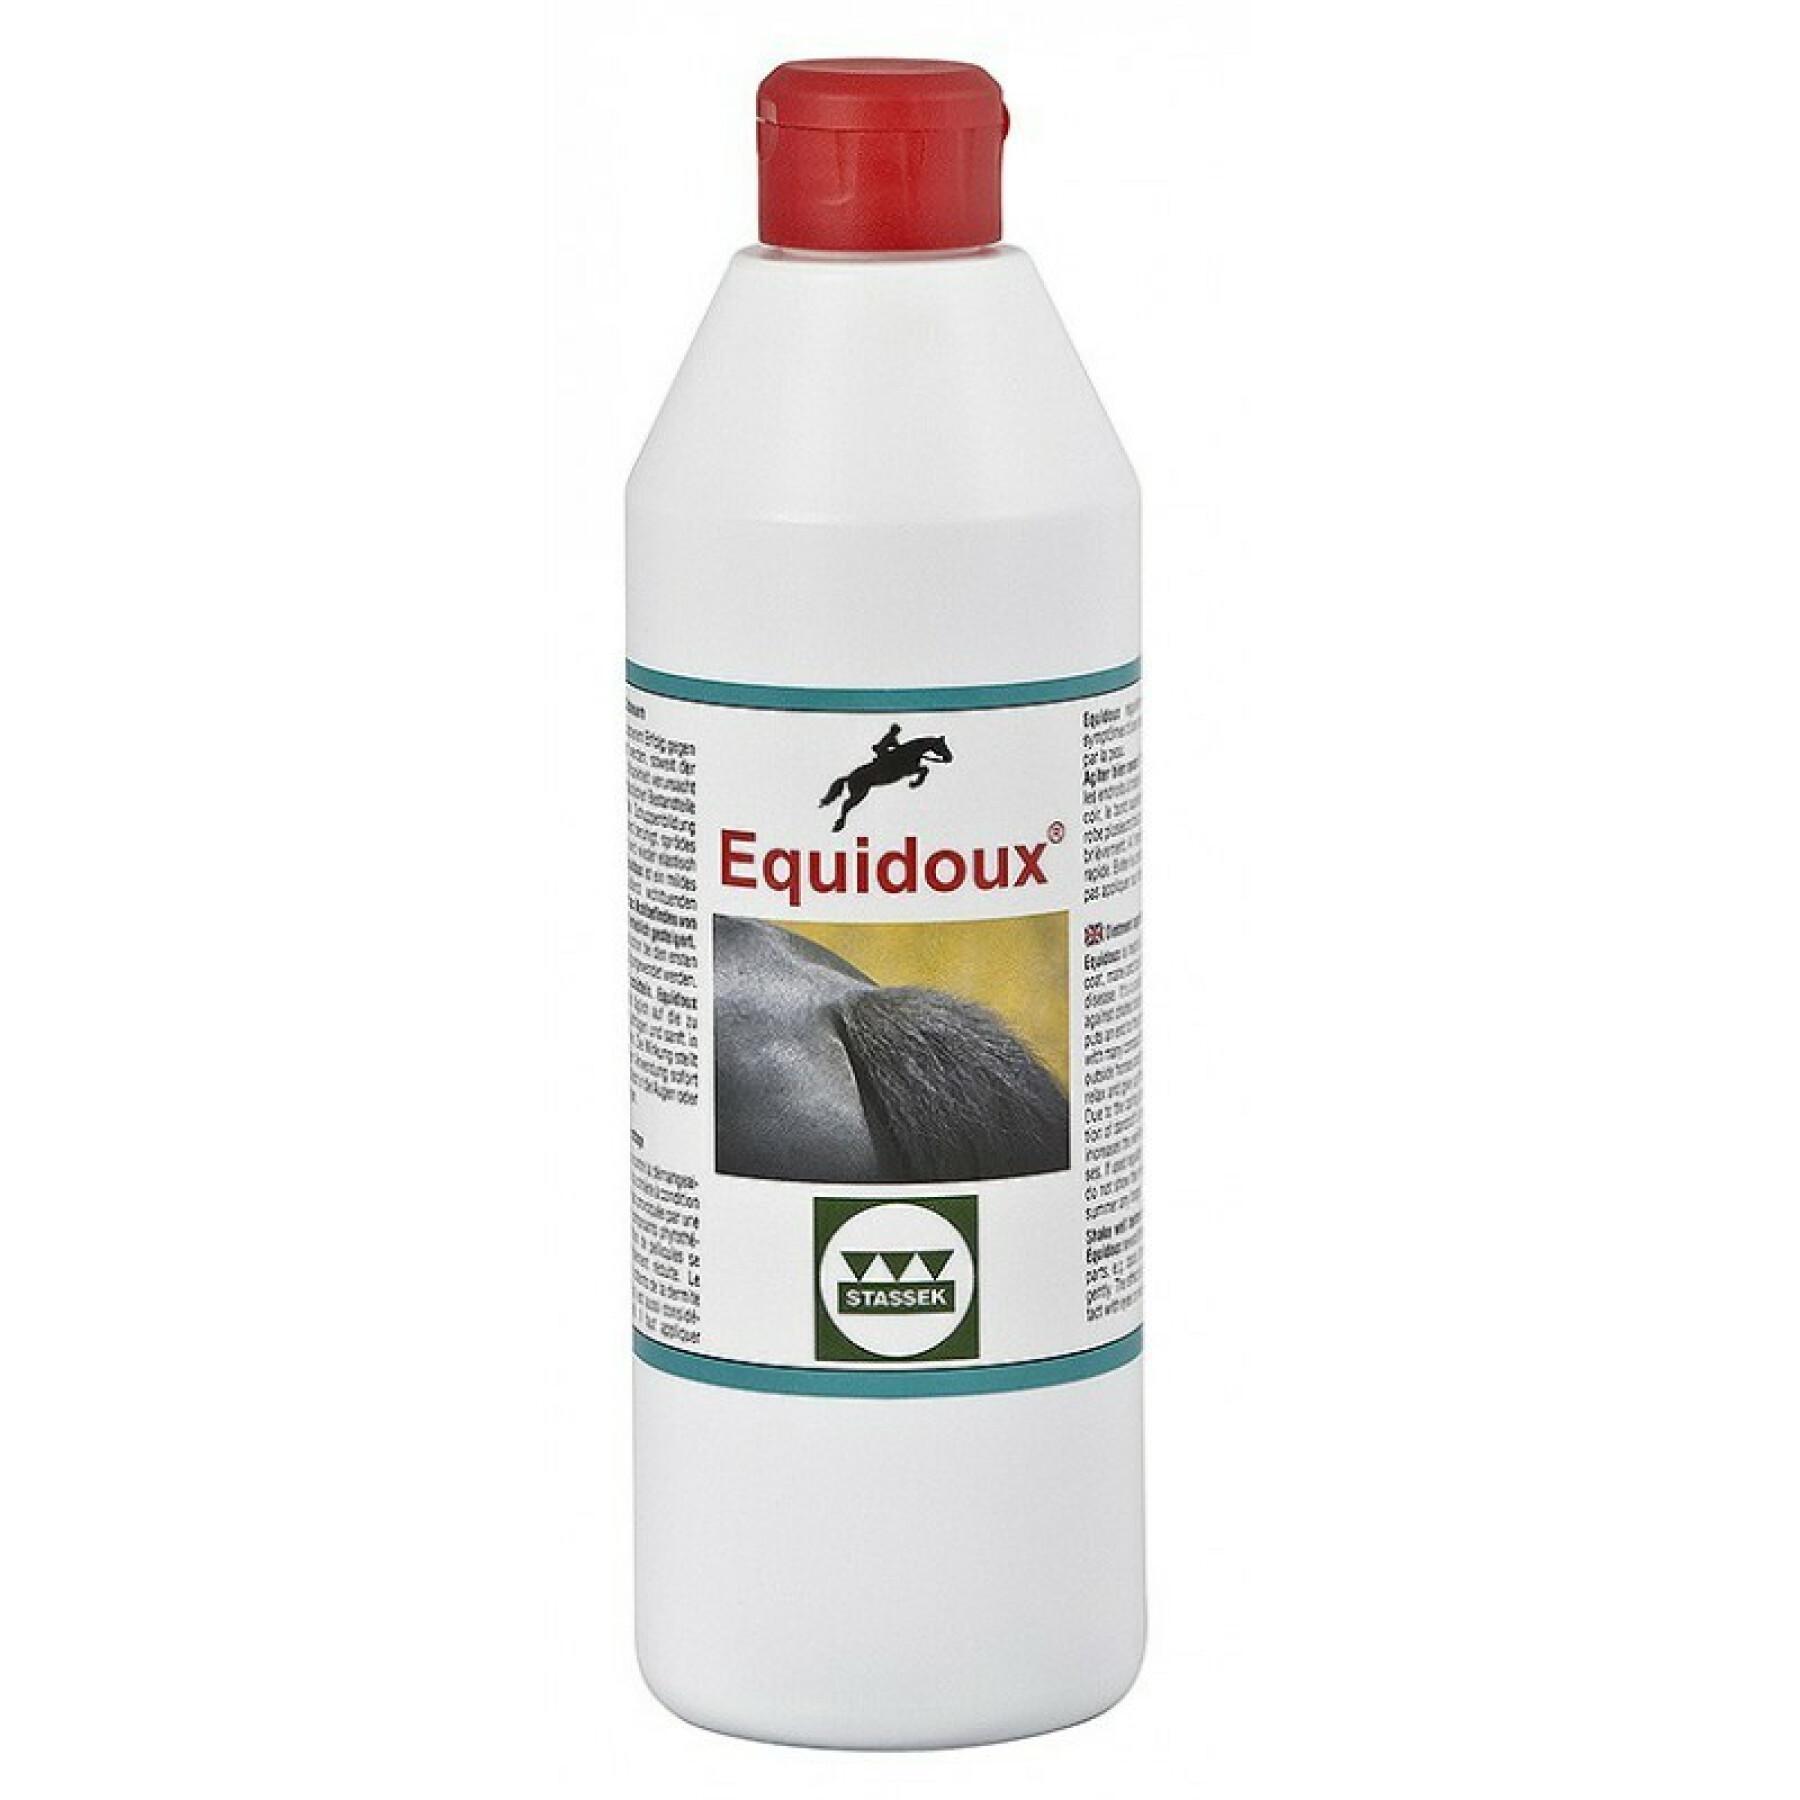 Teinture contre les éraflures de la queue pour cheval Stassek Equidoux 500 ml